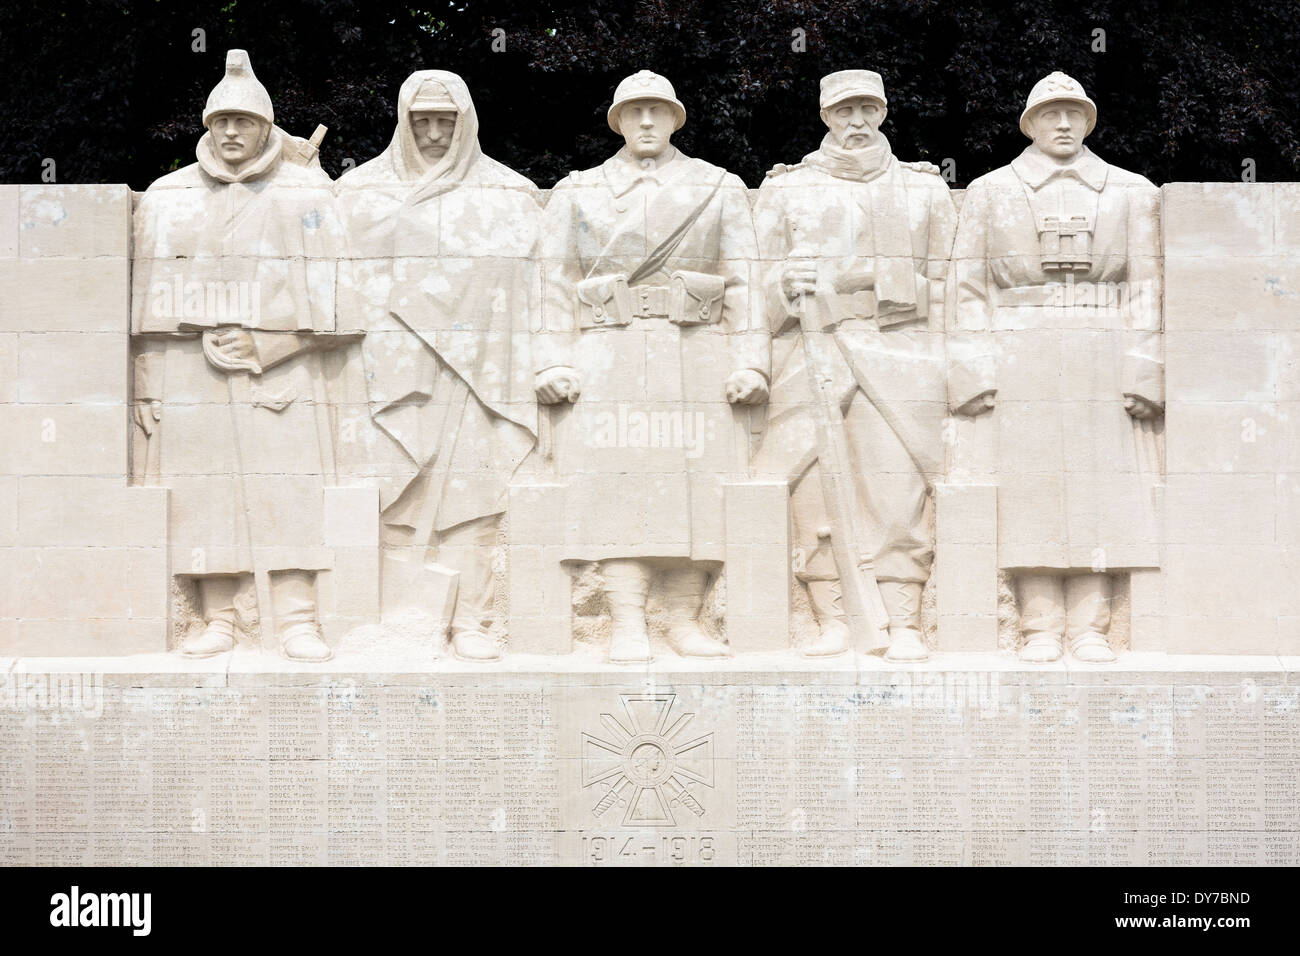 La Seconde Guerre mondiale, un monument pour fils de Verdun - cavalerie, artillerie, territoriaux, de l'infanterie coloniale, et du nom de soldats morts, France Banque D'Images